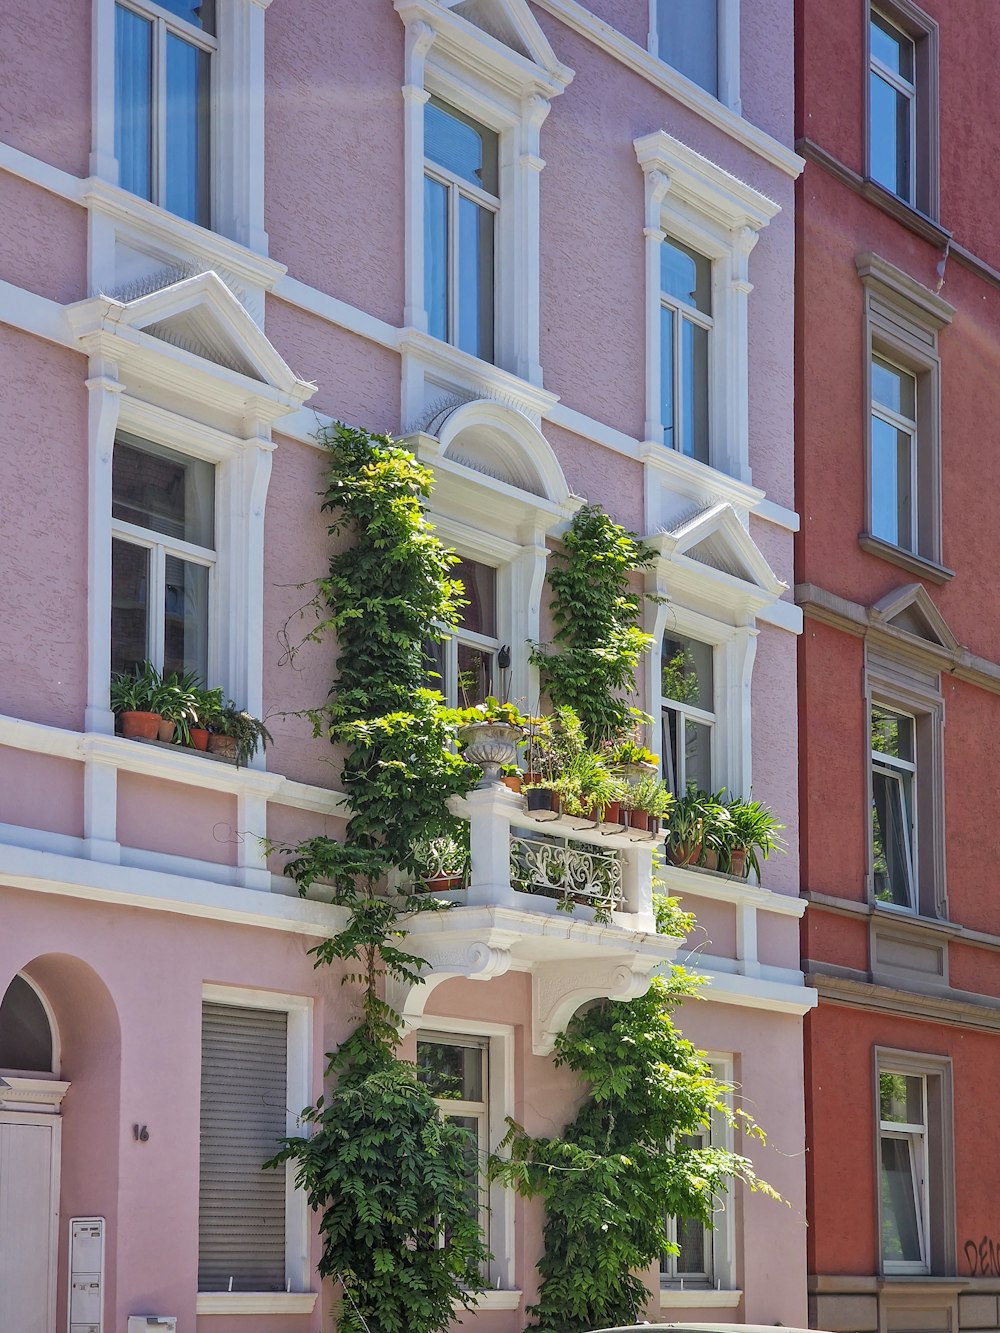 Ein rosafarbenes Gebäude mit vielen Fenstern und Pflanzen, die darauf wachsen